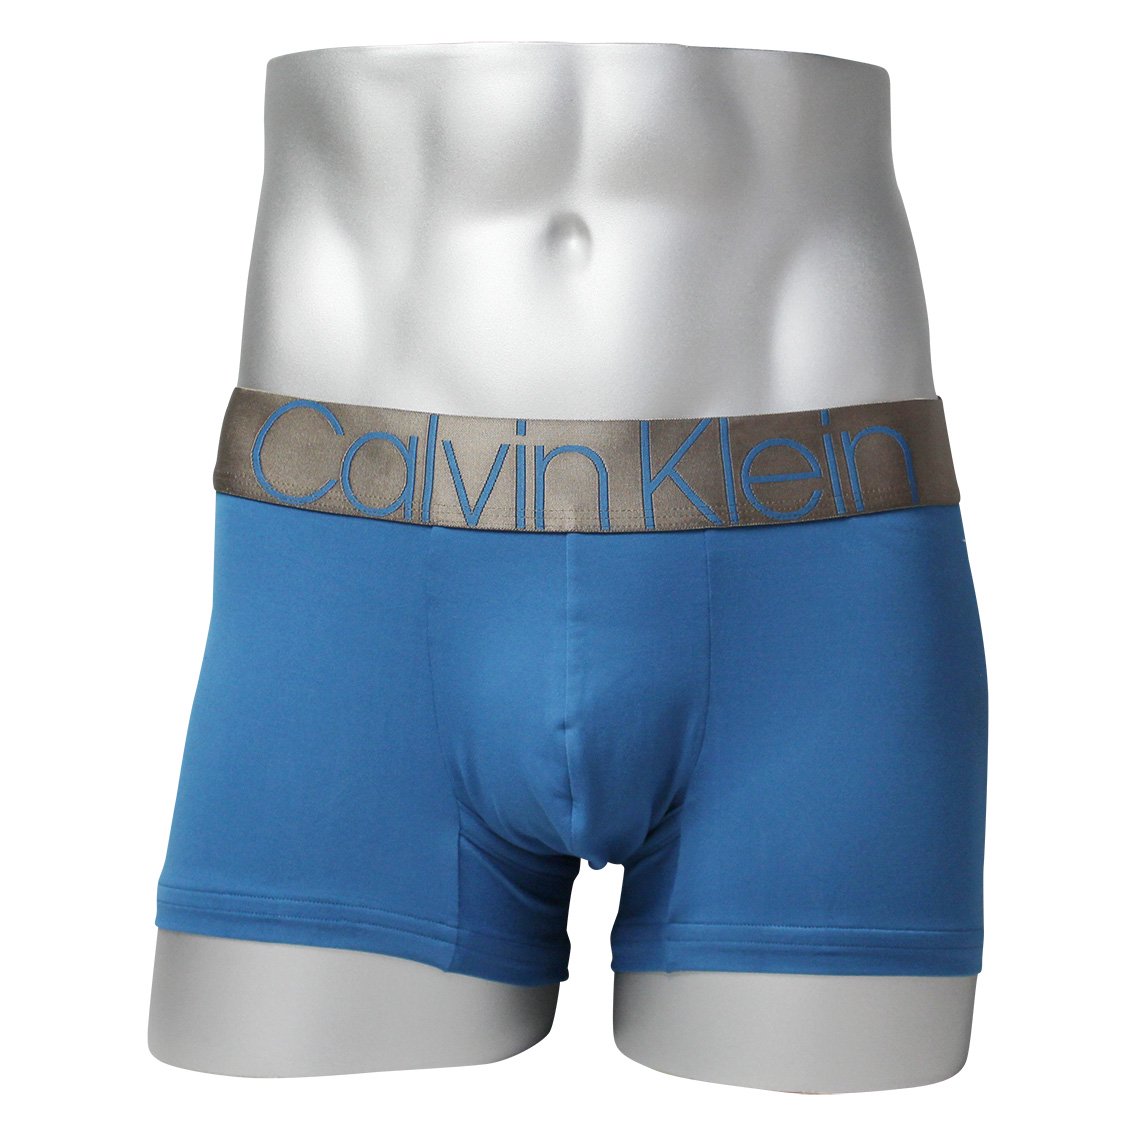 Calvin Klein(カルバンクライン)[NB2540-344]:ボクサーパンツ,男性下着,インナーの通販